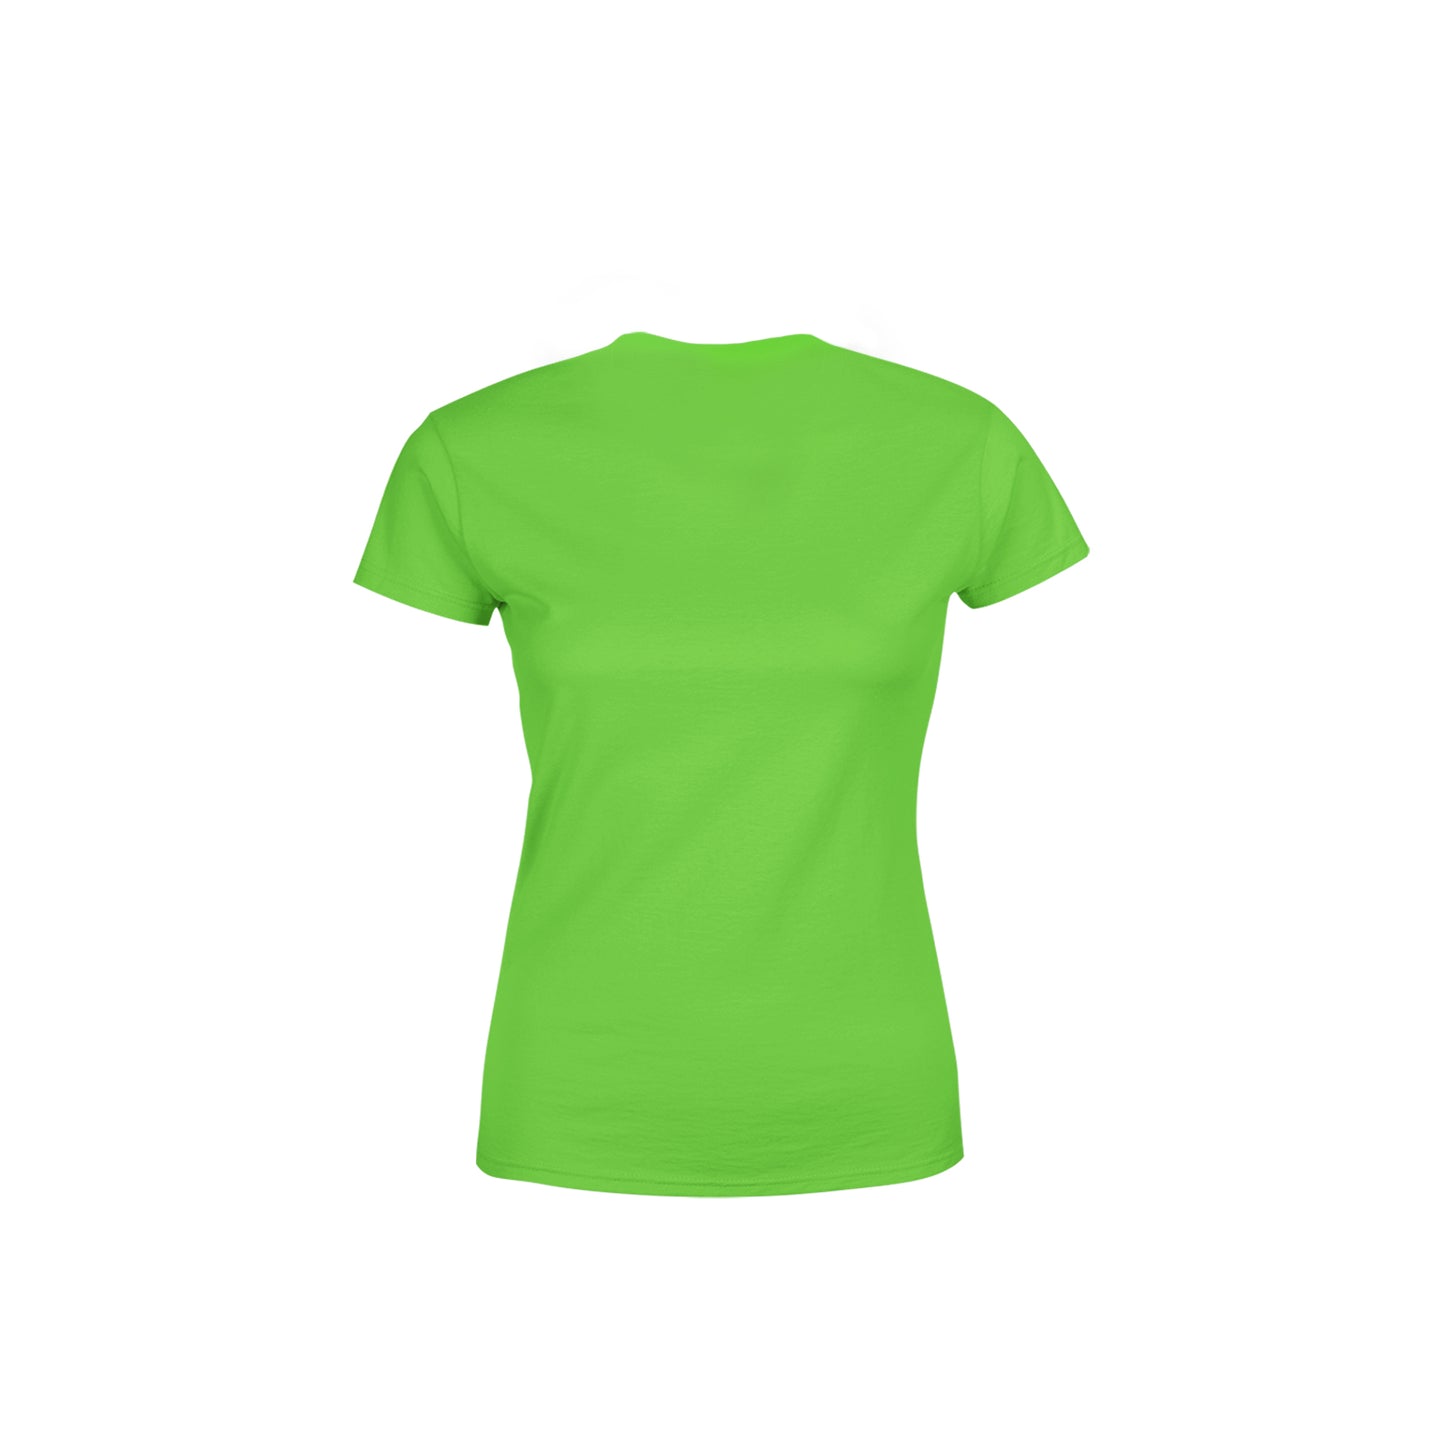 18 Number Women's T-Shirt (Liril Green)